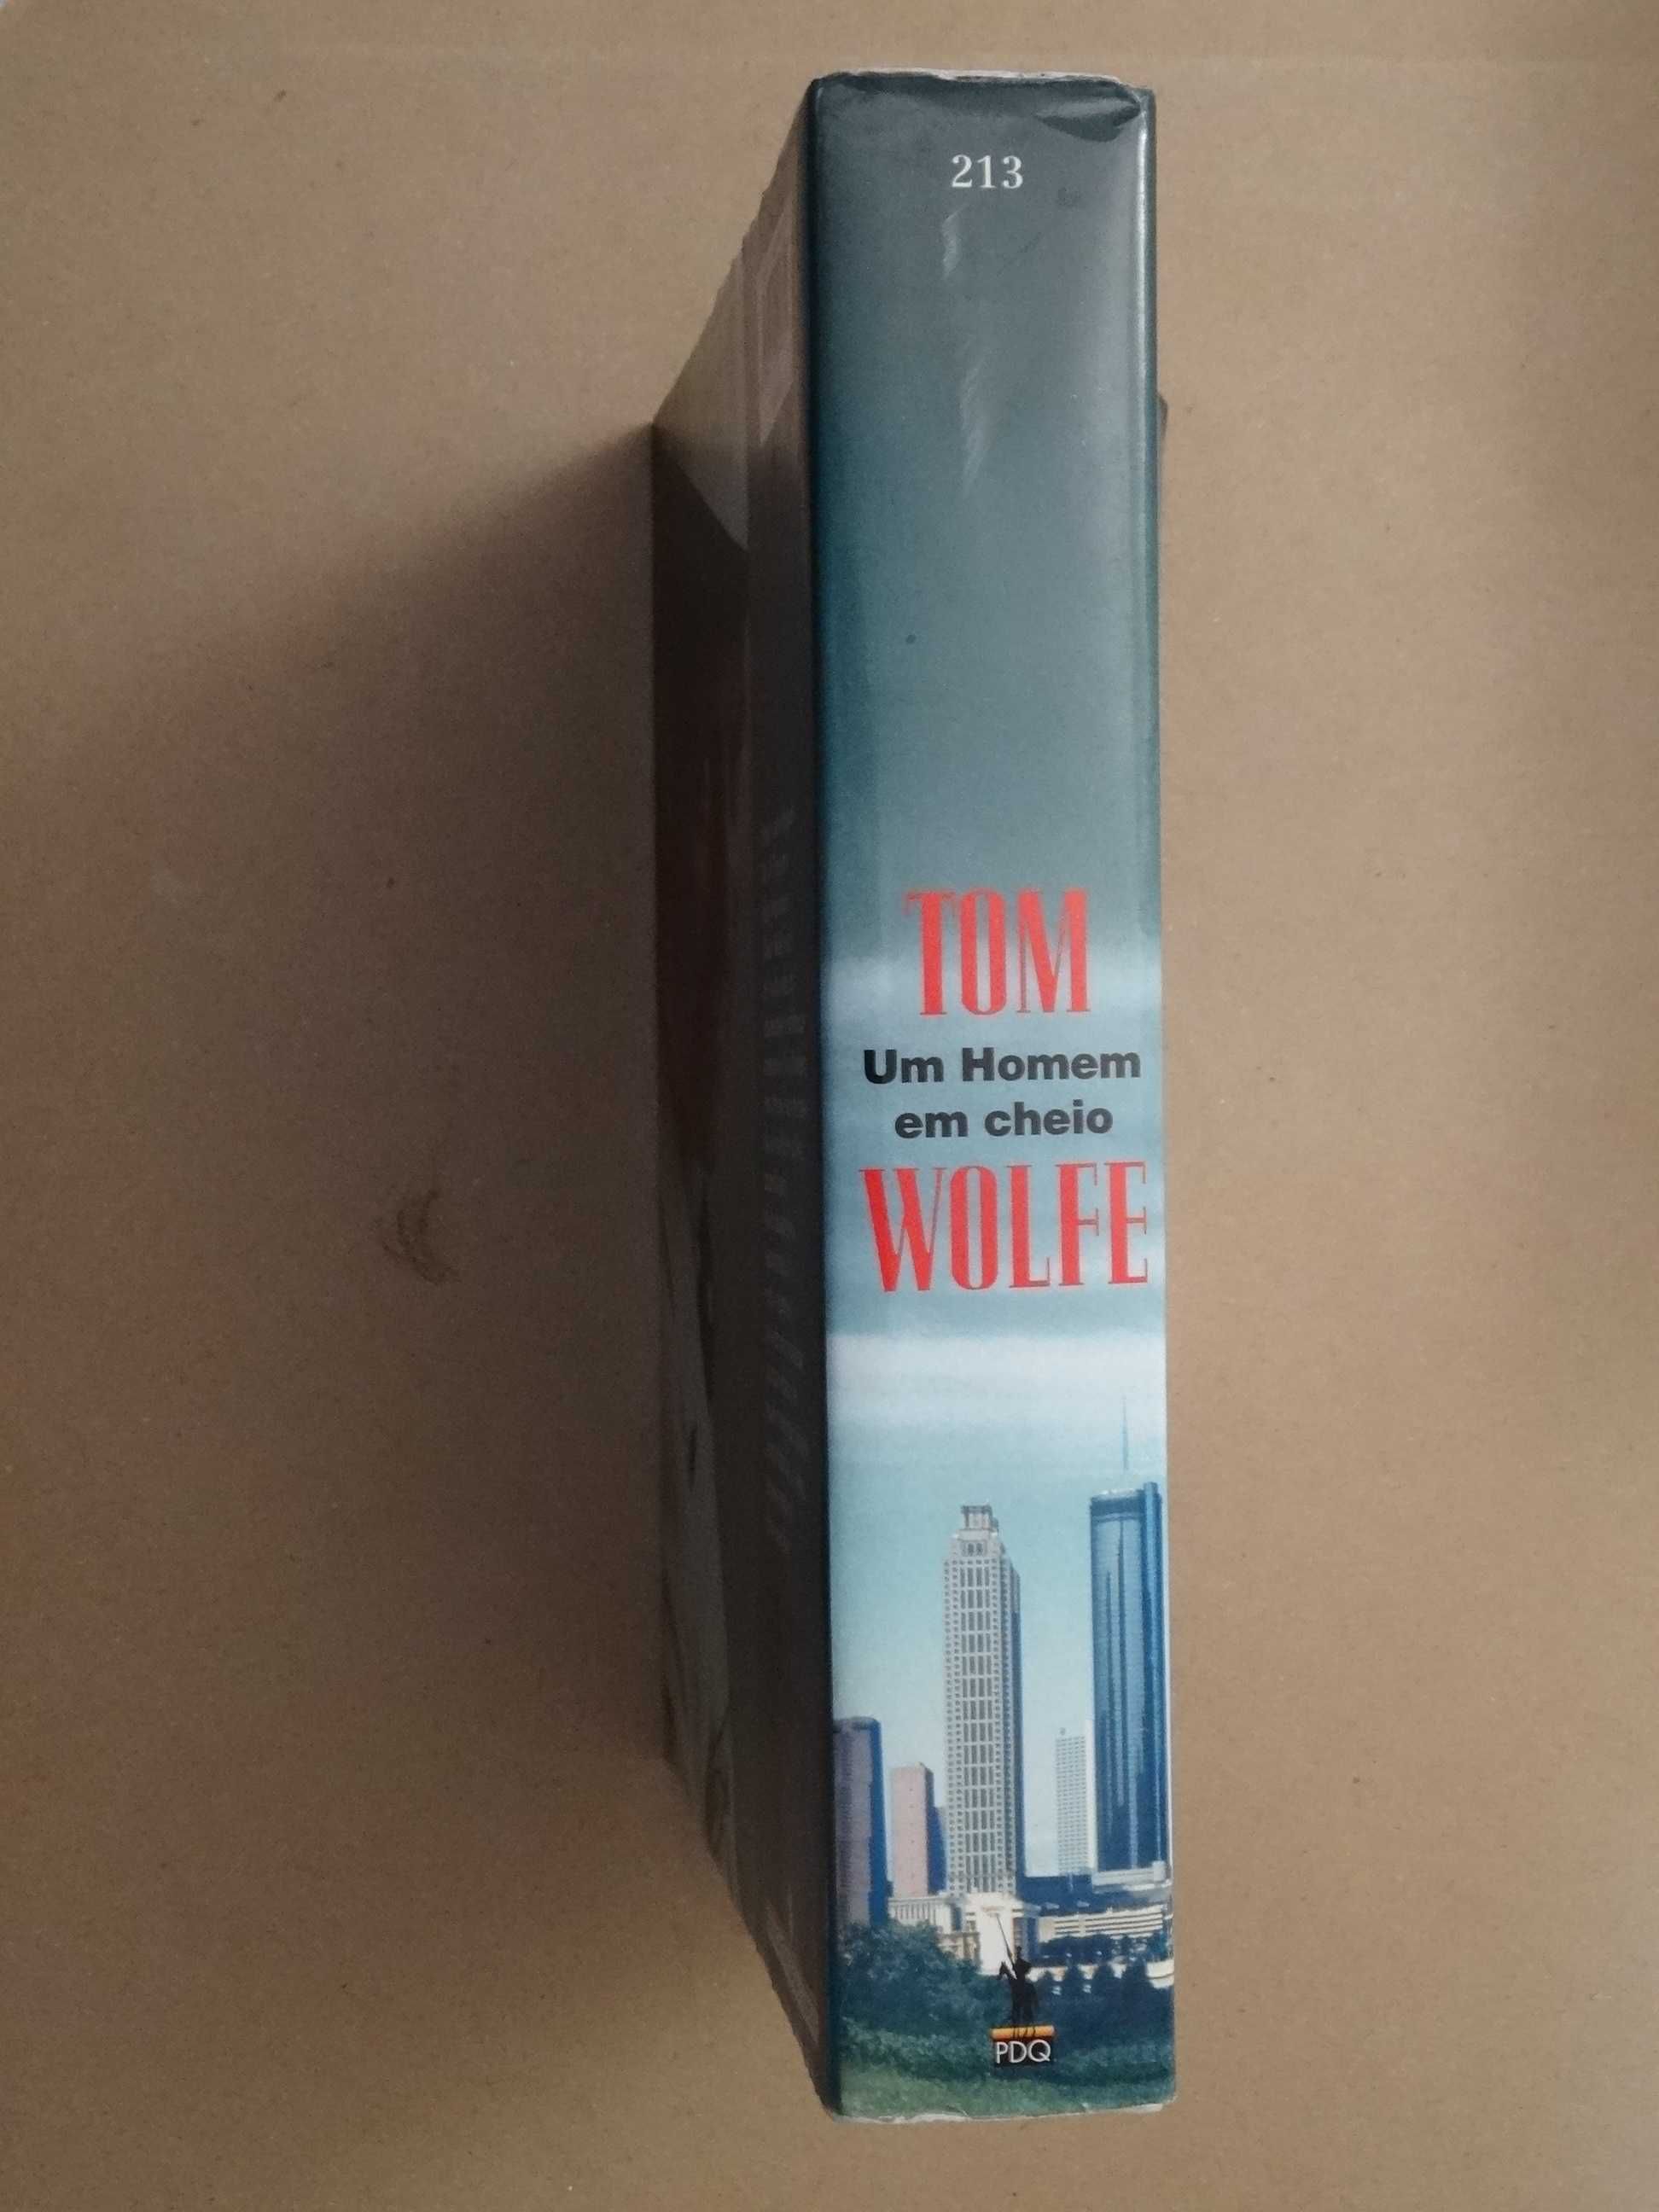 Um Homem Em Cheio de Tom Wolfe - 1ª Edição